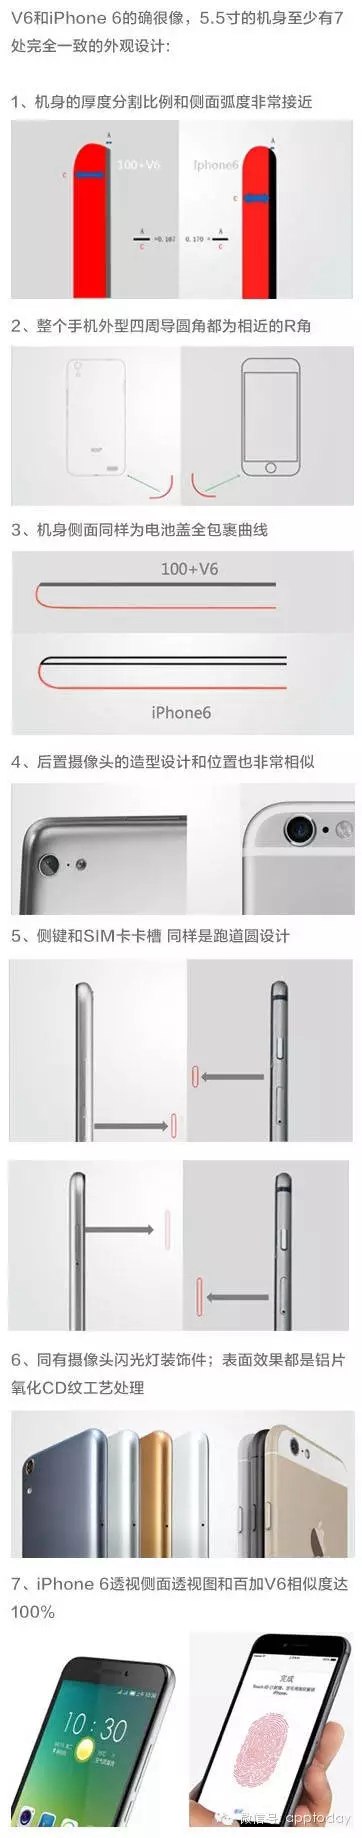 抄袭中国品牌 苹果最近又摊上事了！